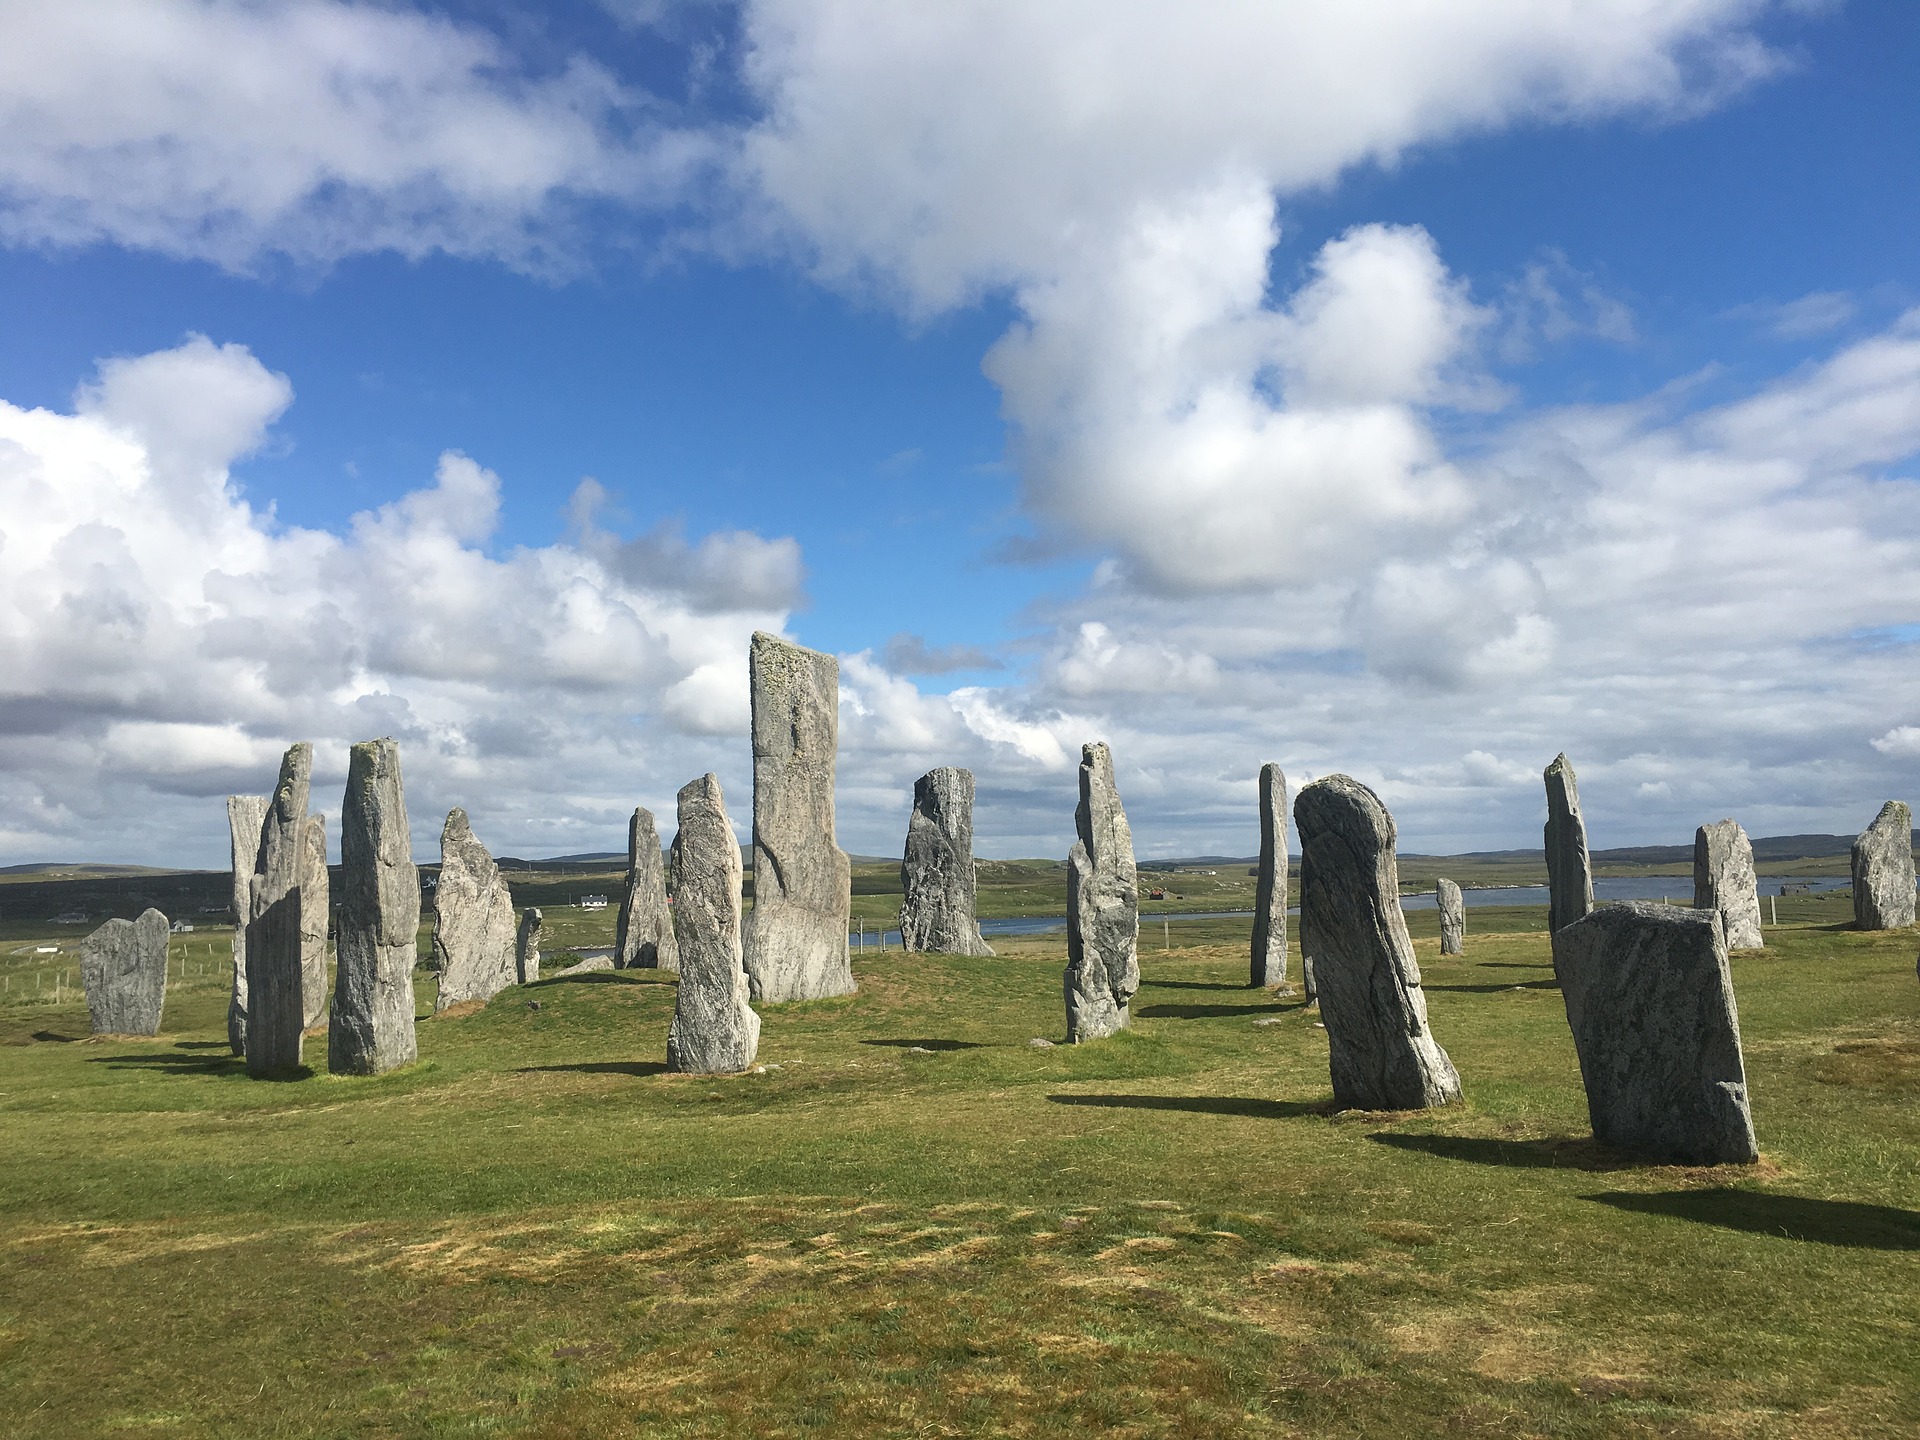 Стоун 6 букв. Менгиры Калланиша, Шотландия. Камни Калланиш остров Льюис Шотландия. Стоячие камни Калланиша, Шотландия. Внешние Гебридские острова Шотландии.